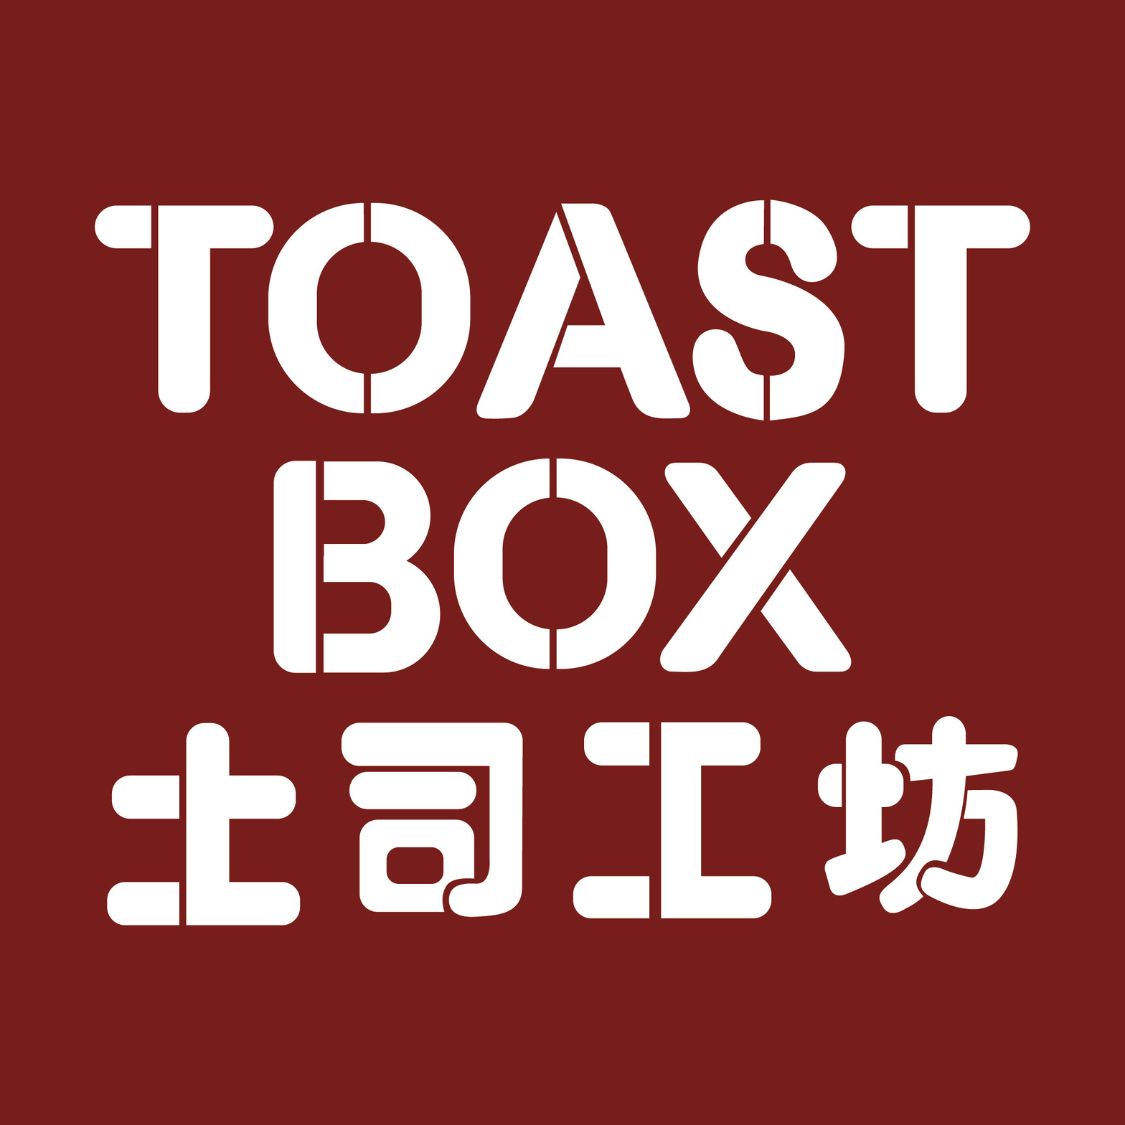 Toast Box.jpg